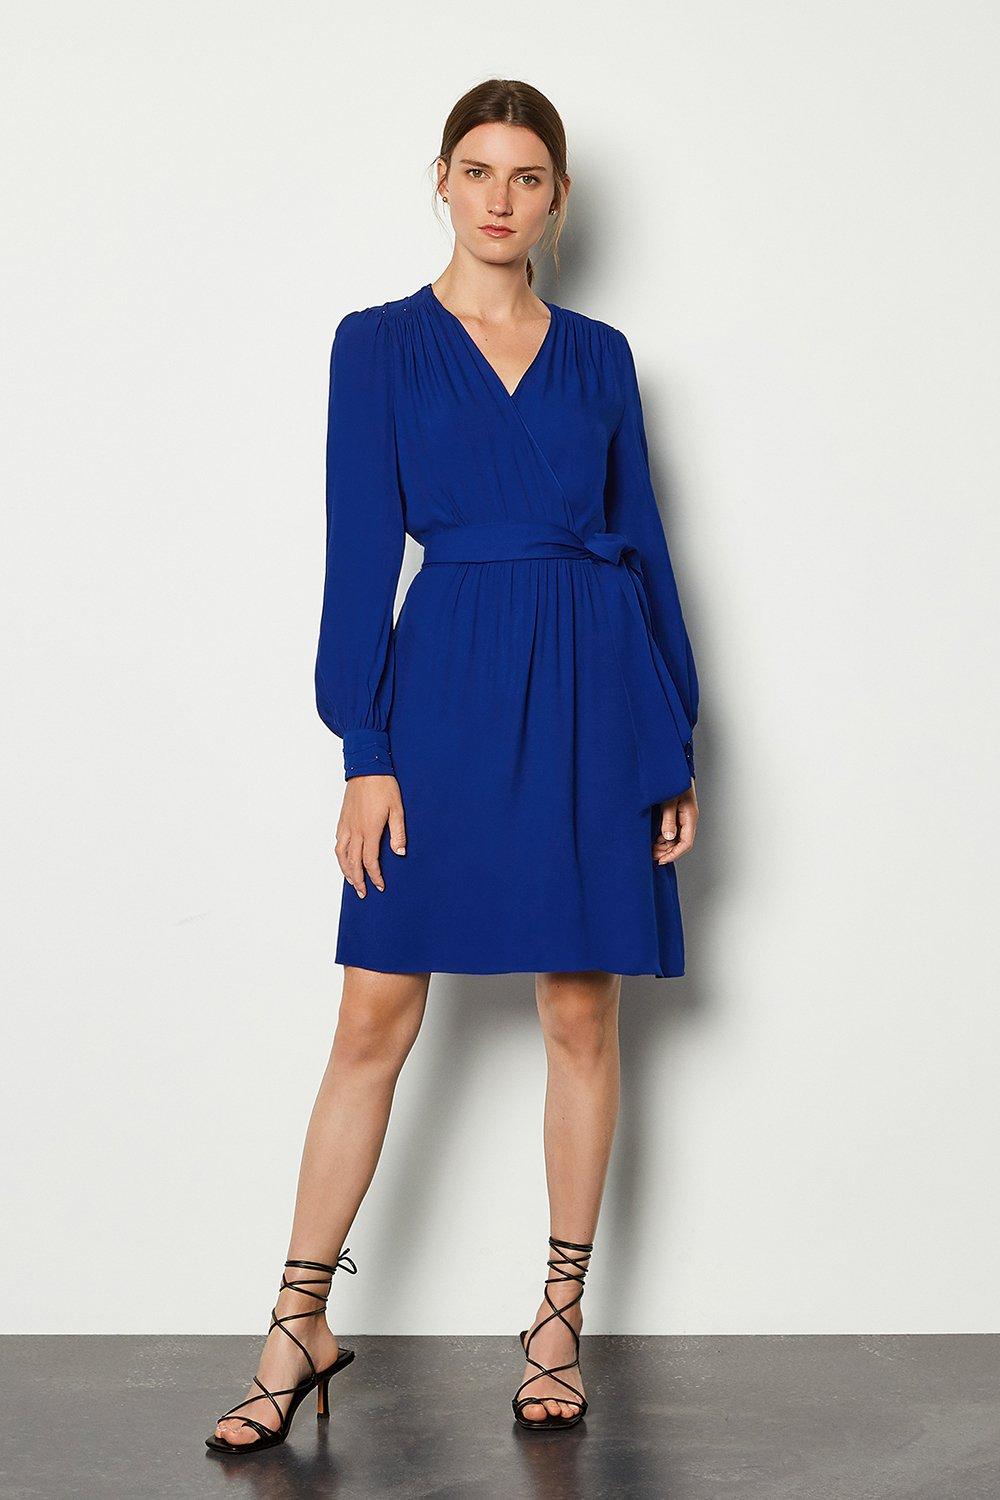 cobalt blue dress long sleeve